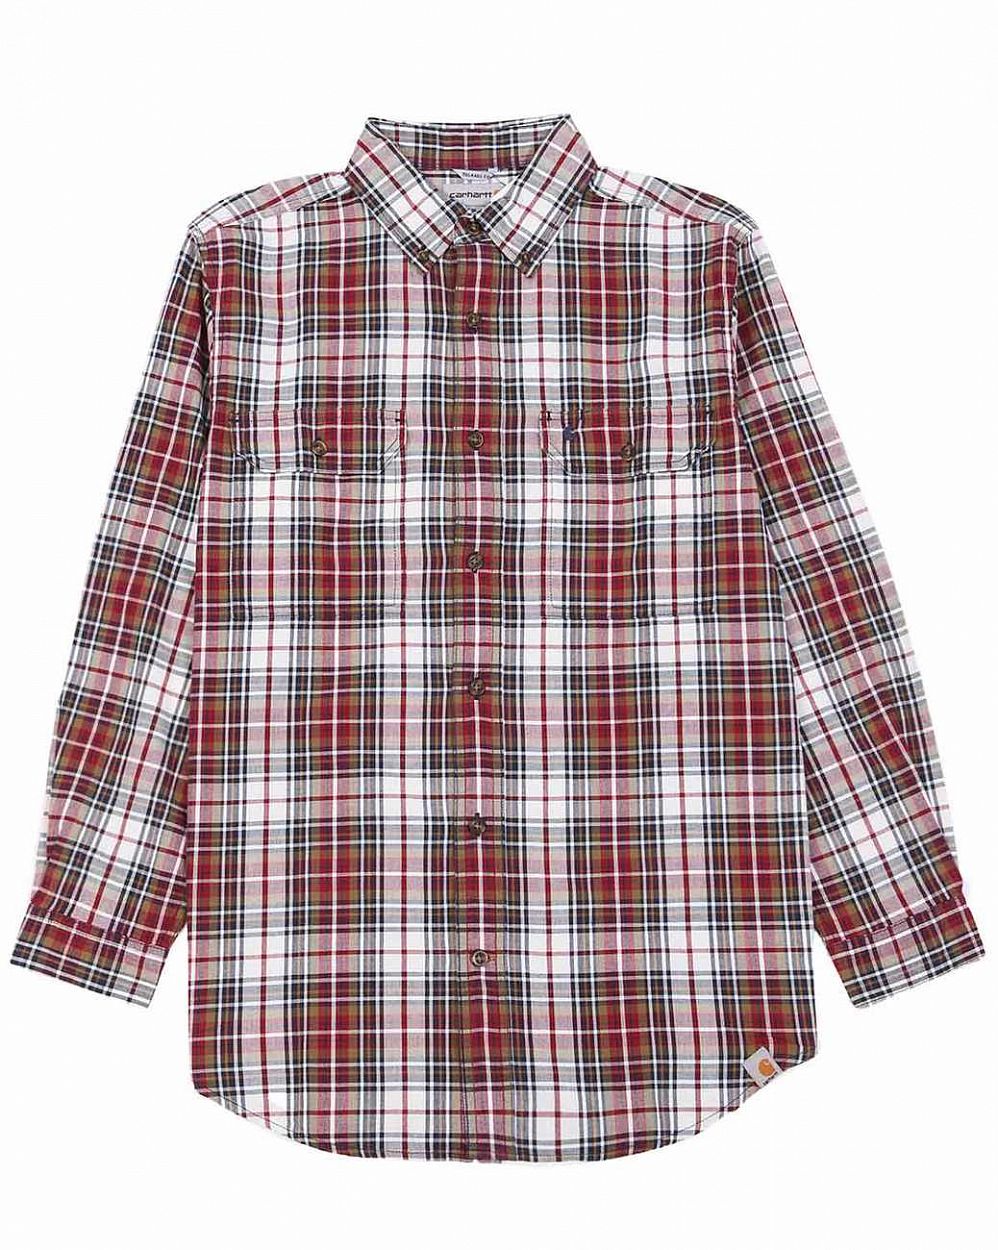 Рубашка мужская с длинным рукавом Publish 599 Red Check отзывы